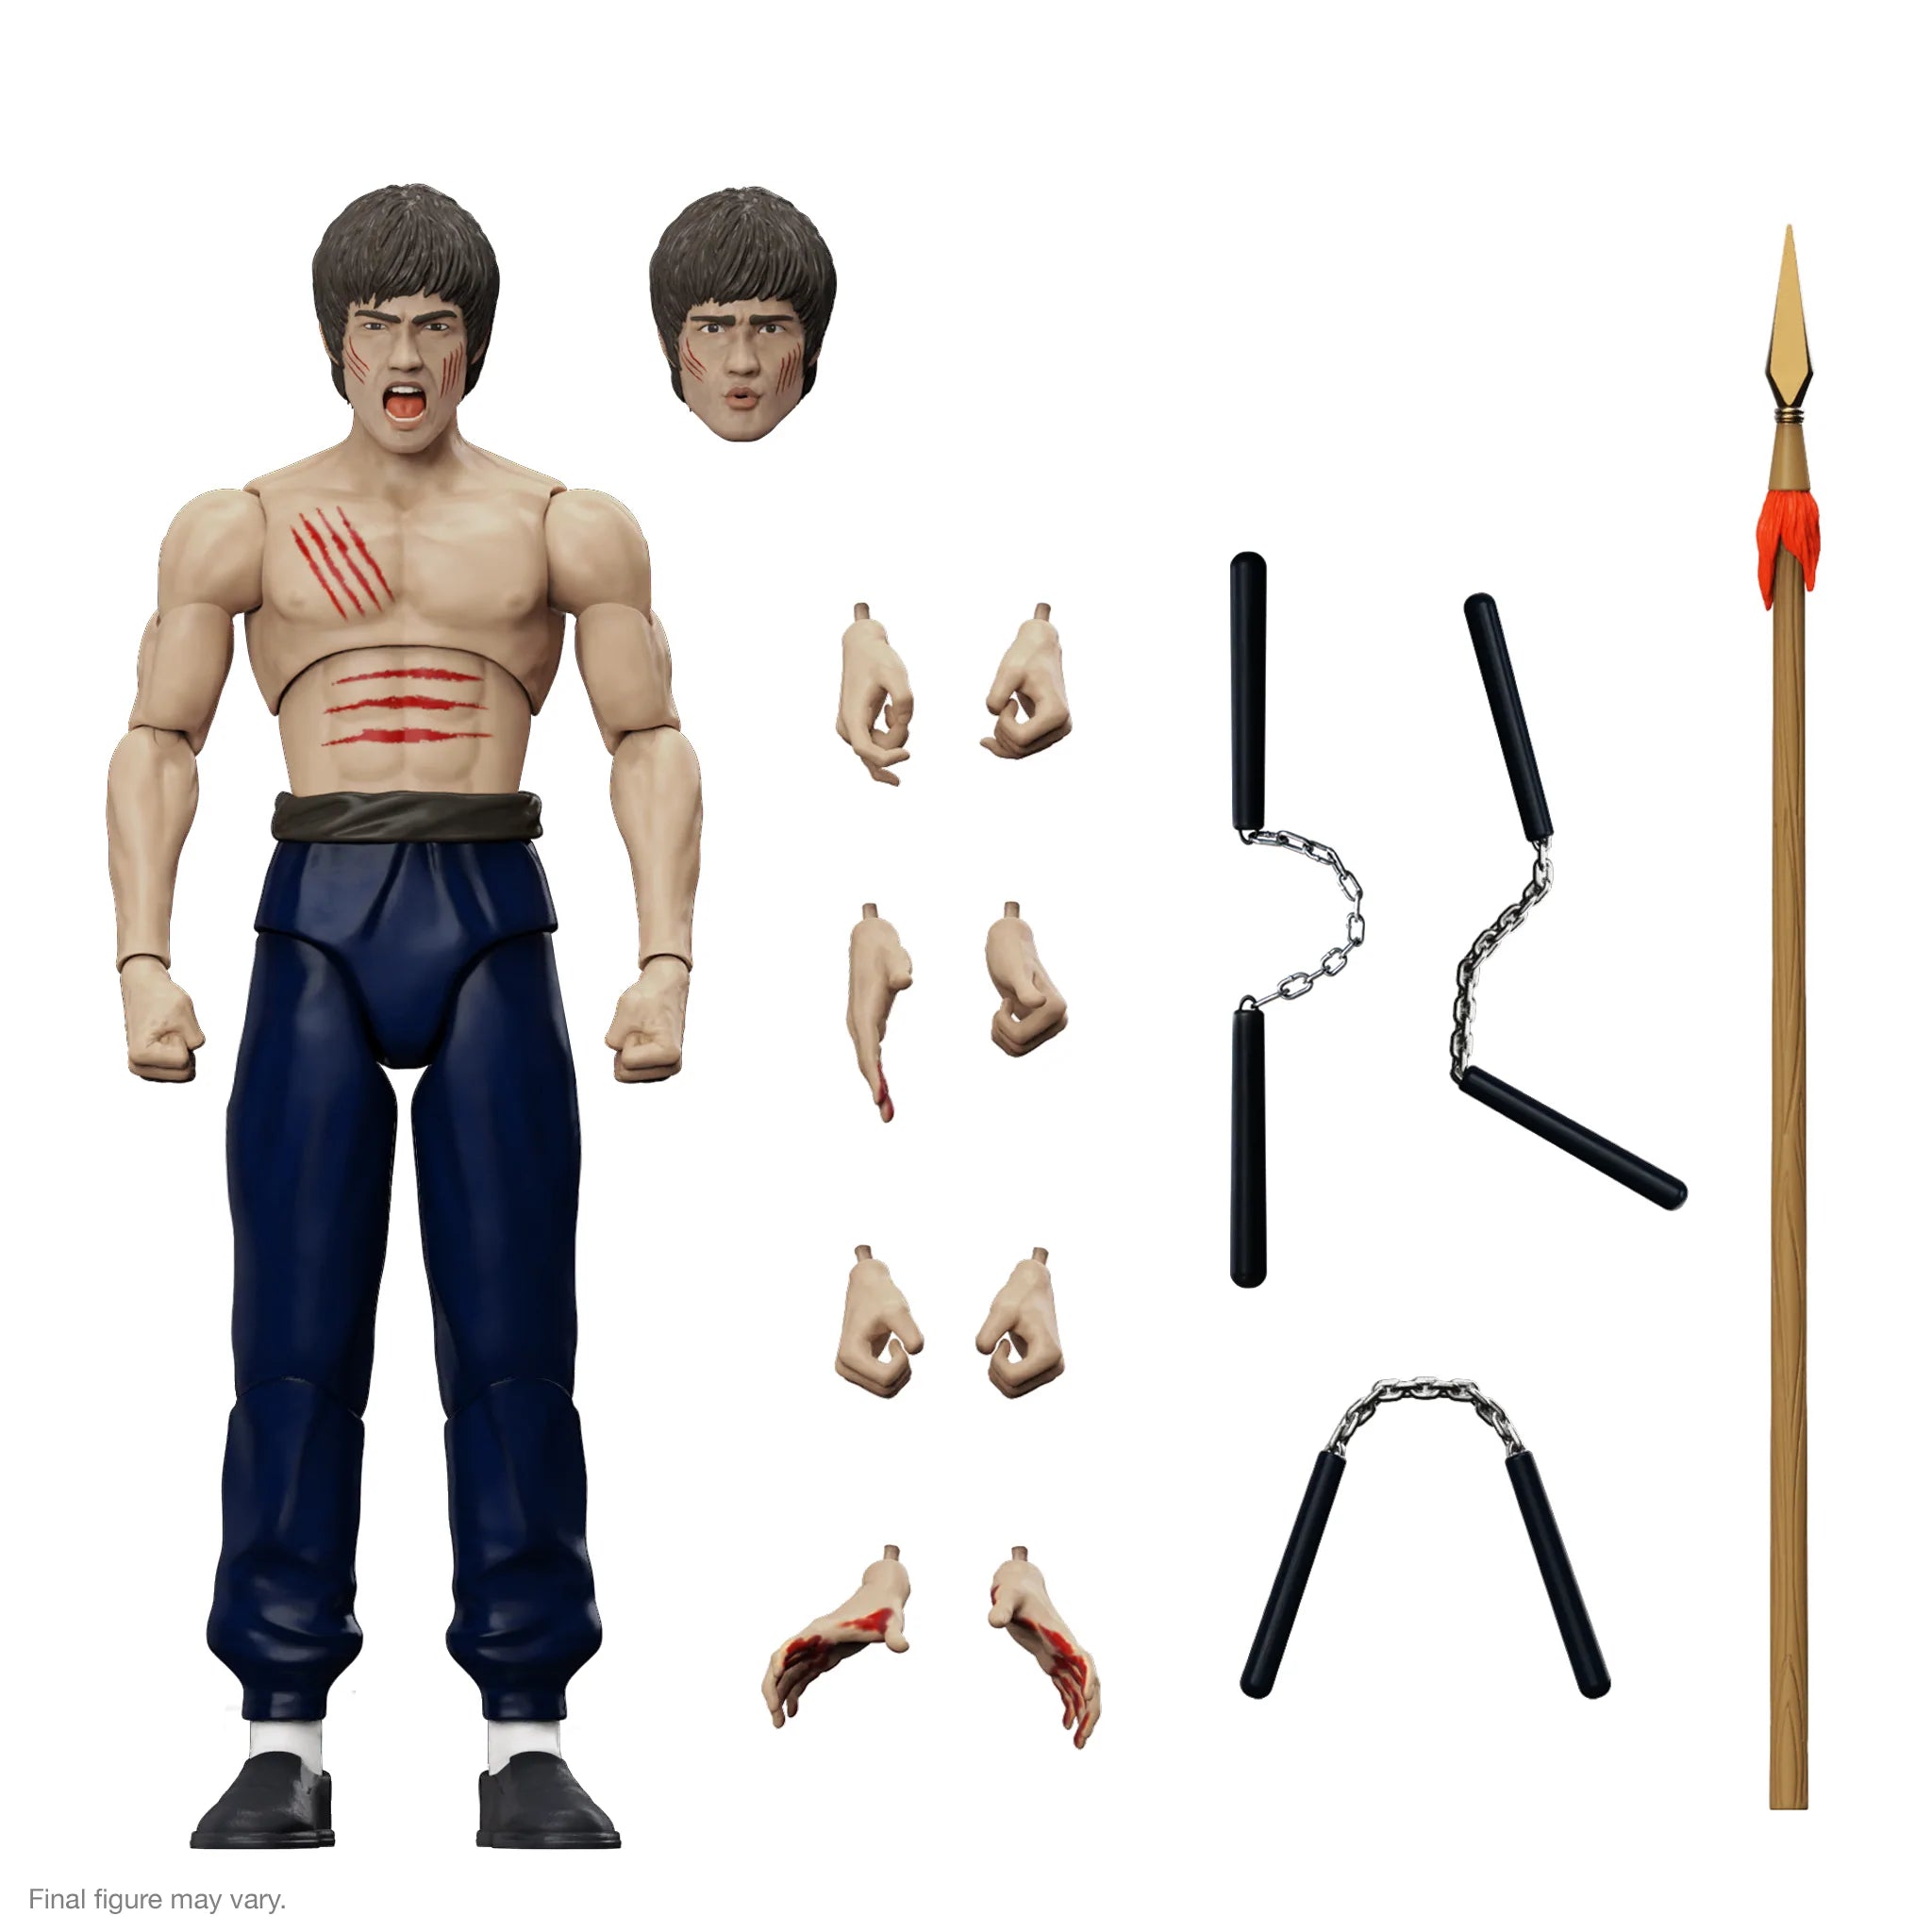 Super7 - Bruce Lee ULTIMATES! - Wave 2 - Bruce Lee (The Fighter) - Marvelous Toys